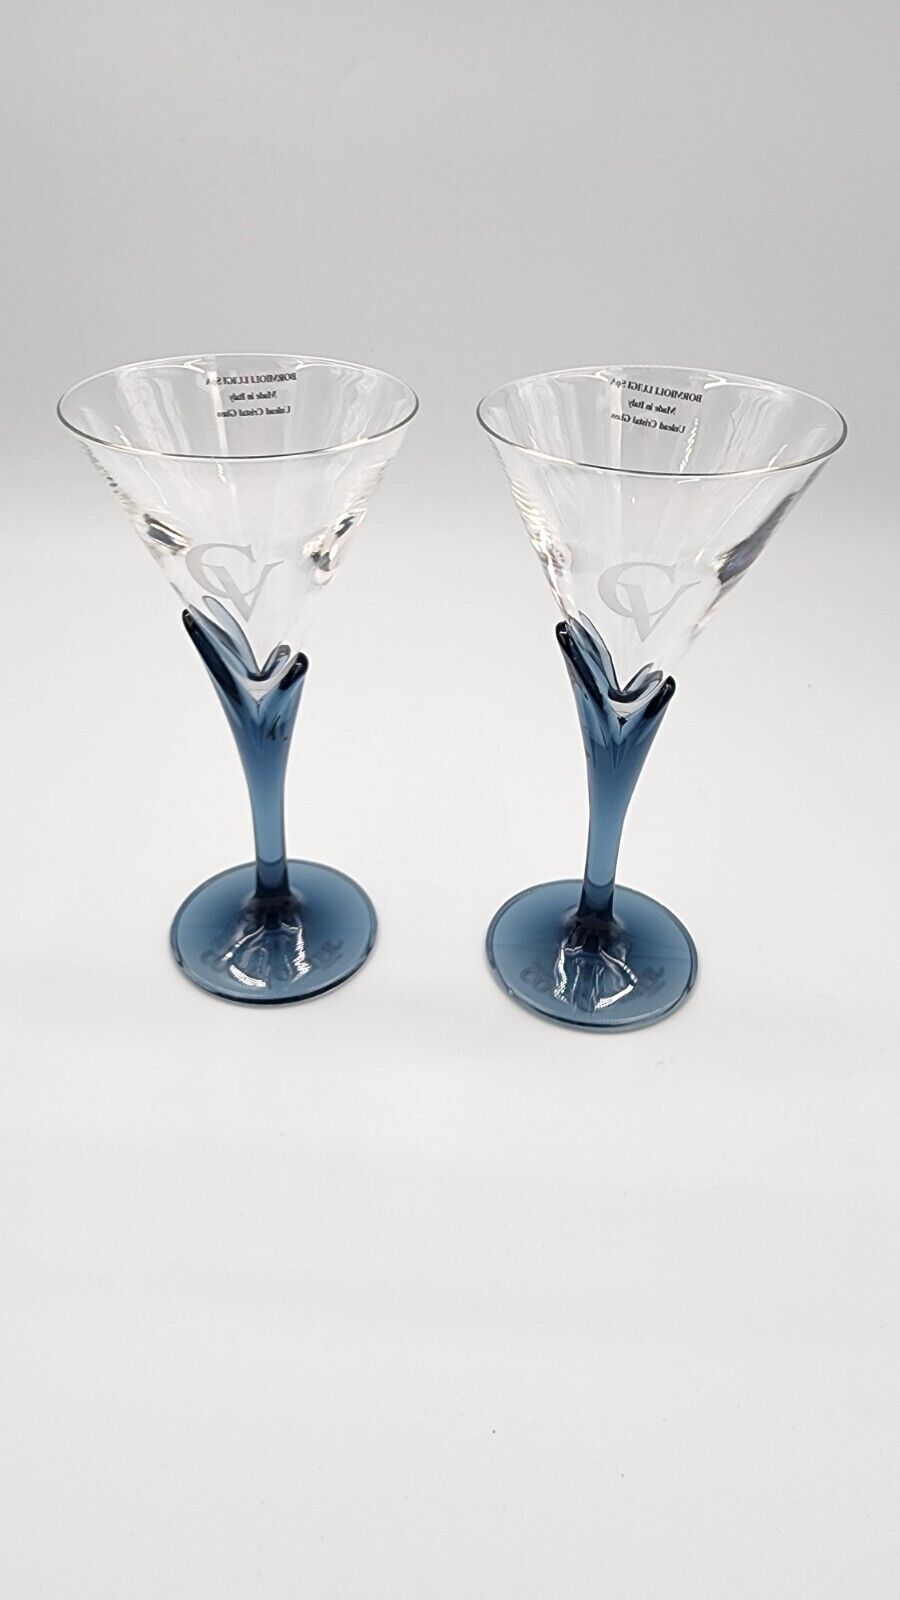 2 New Courvoisier Cognac Luigi Bormioli Tulip Blue Stem Martini Glasses Florian 